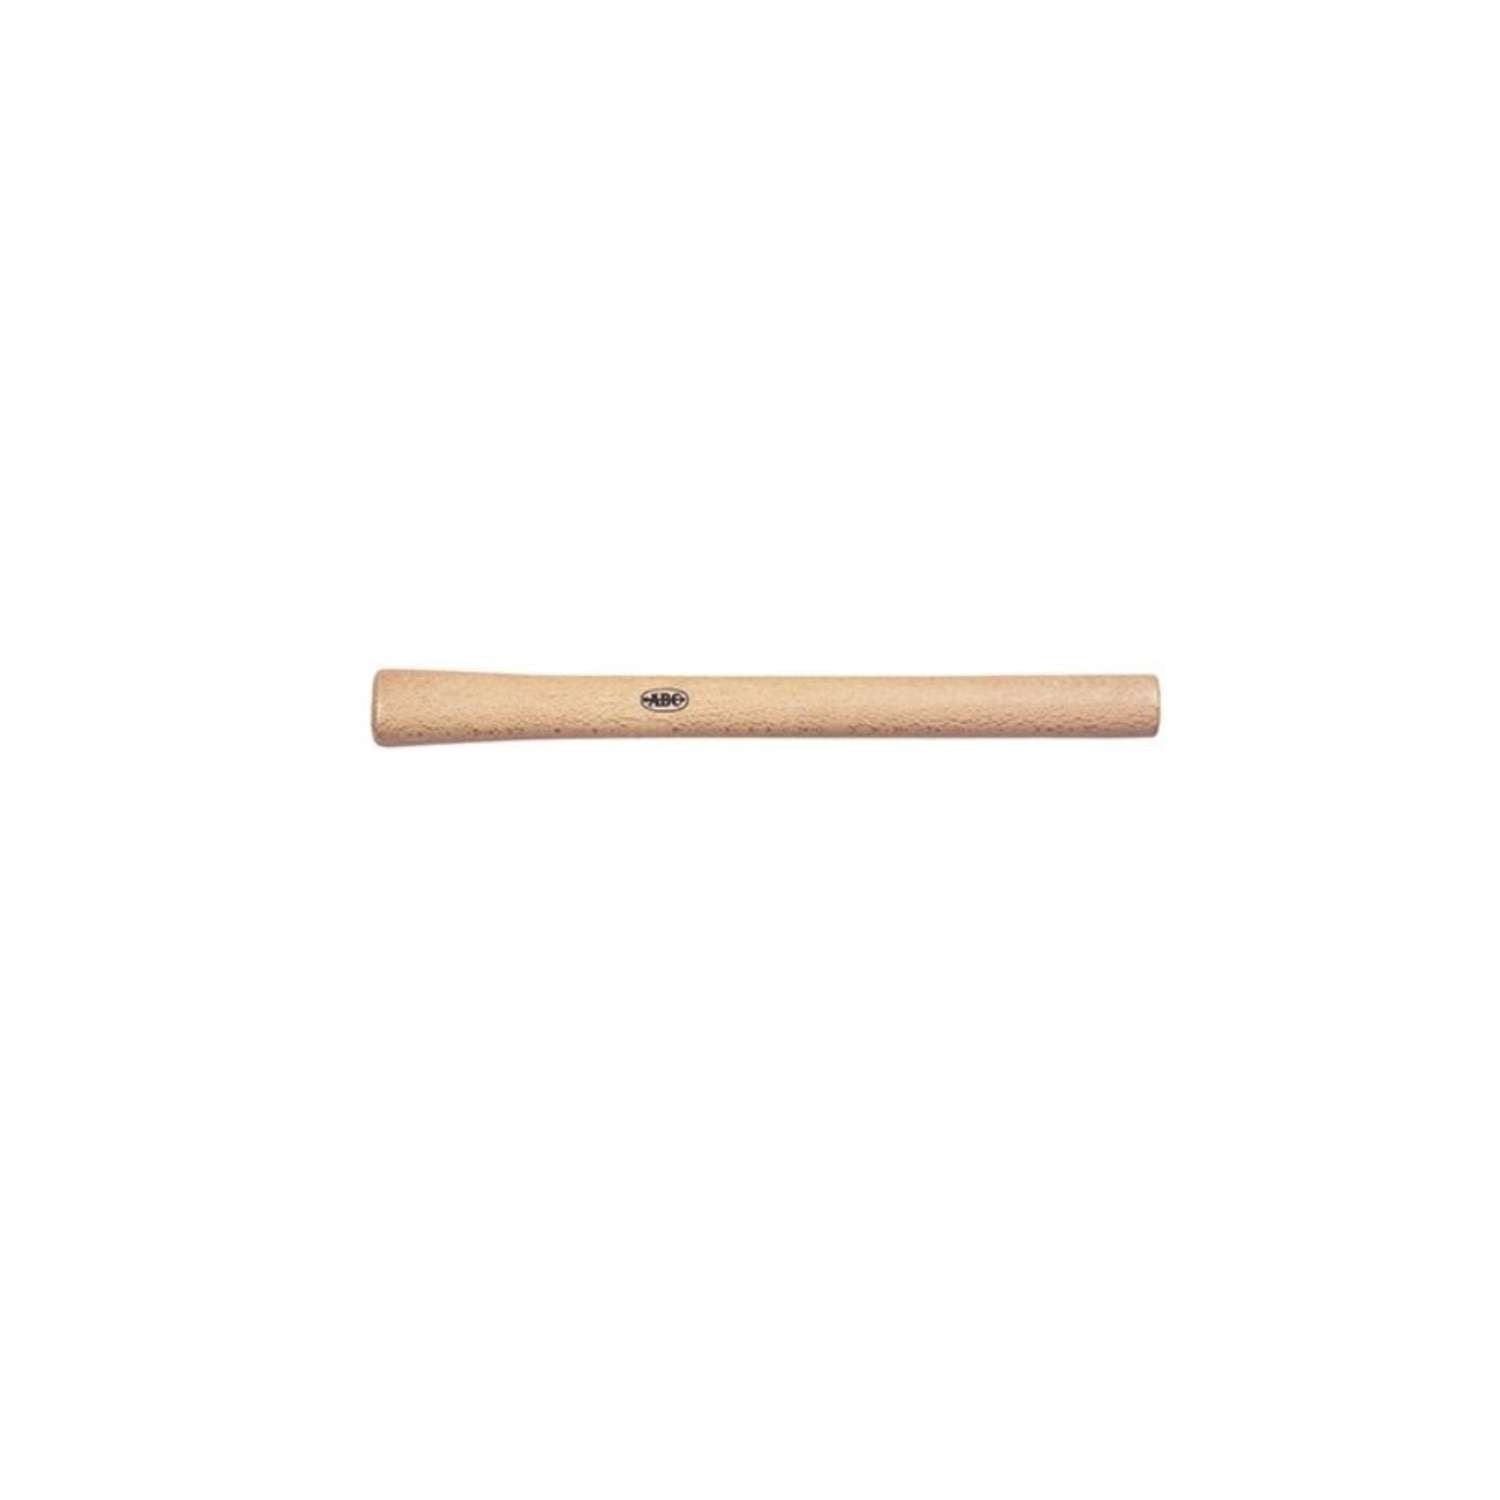 Manico per martello e martellino in legno 400 o 500 gr - B 3461 0000